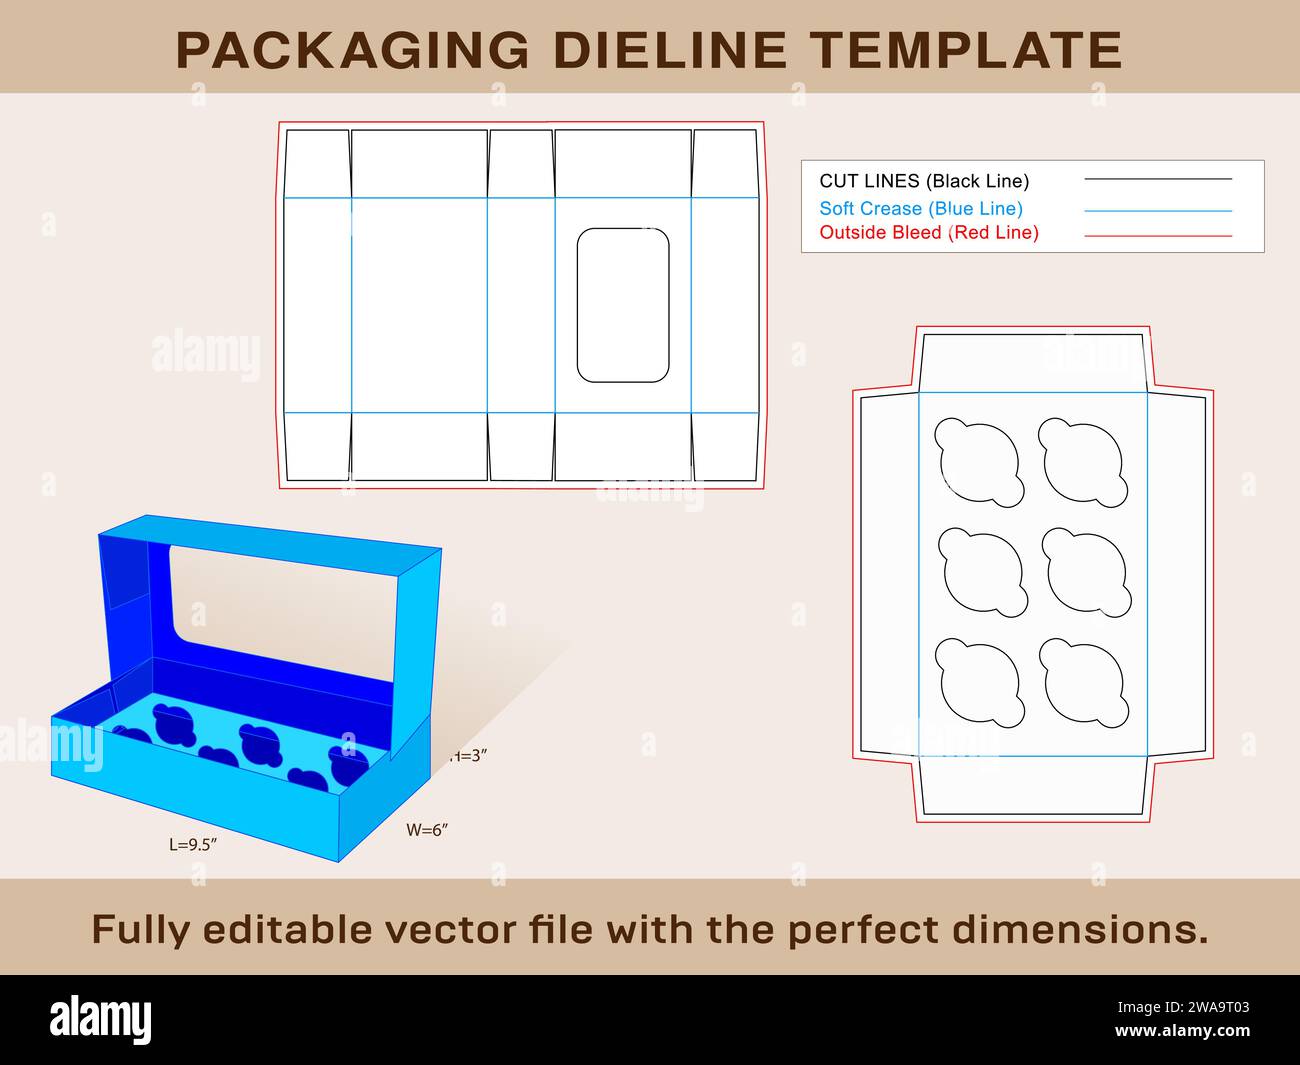 Finestra Cupcake Box visualizza 6 fori Inserisci file vettoriale modificabile modello Dieline. Illustrazione Vettoriale